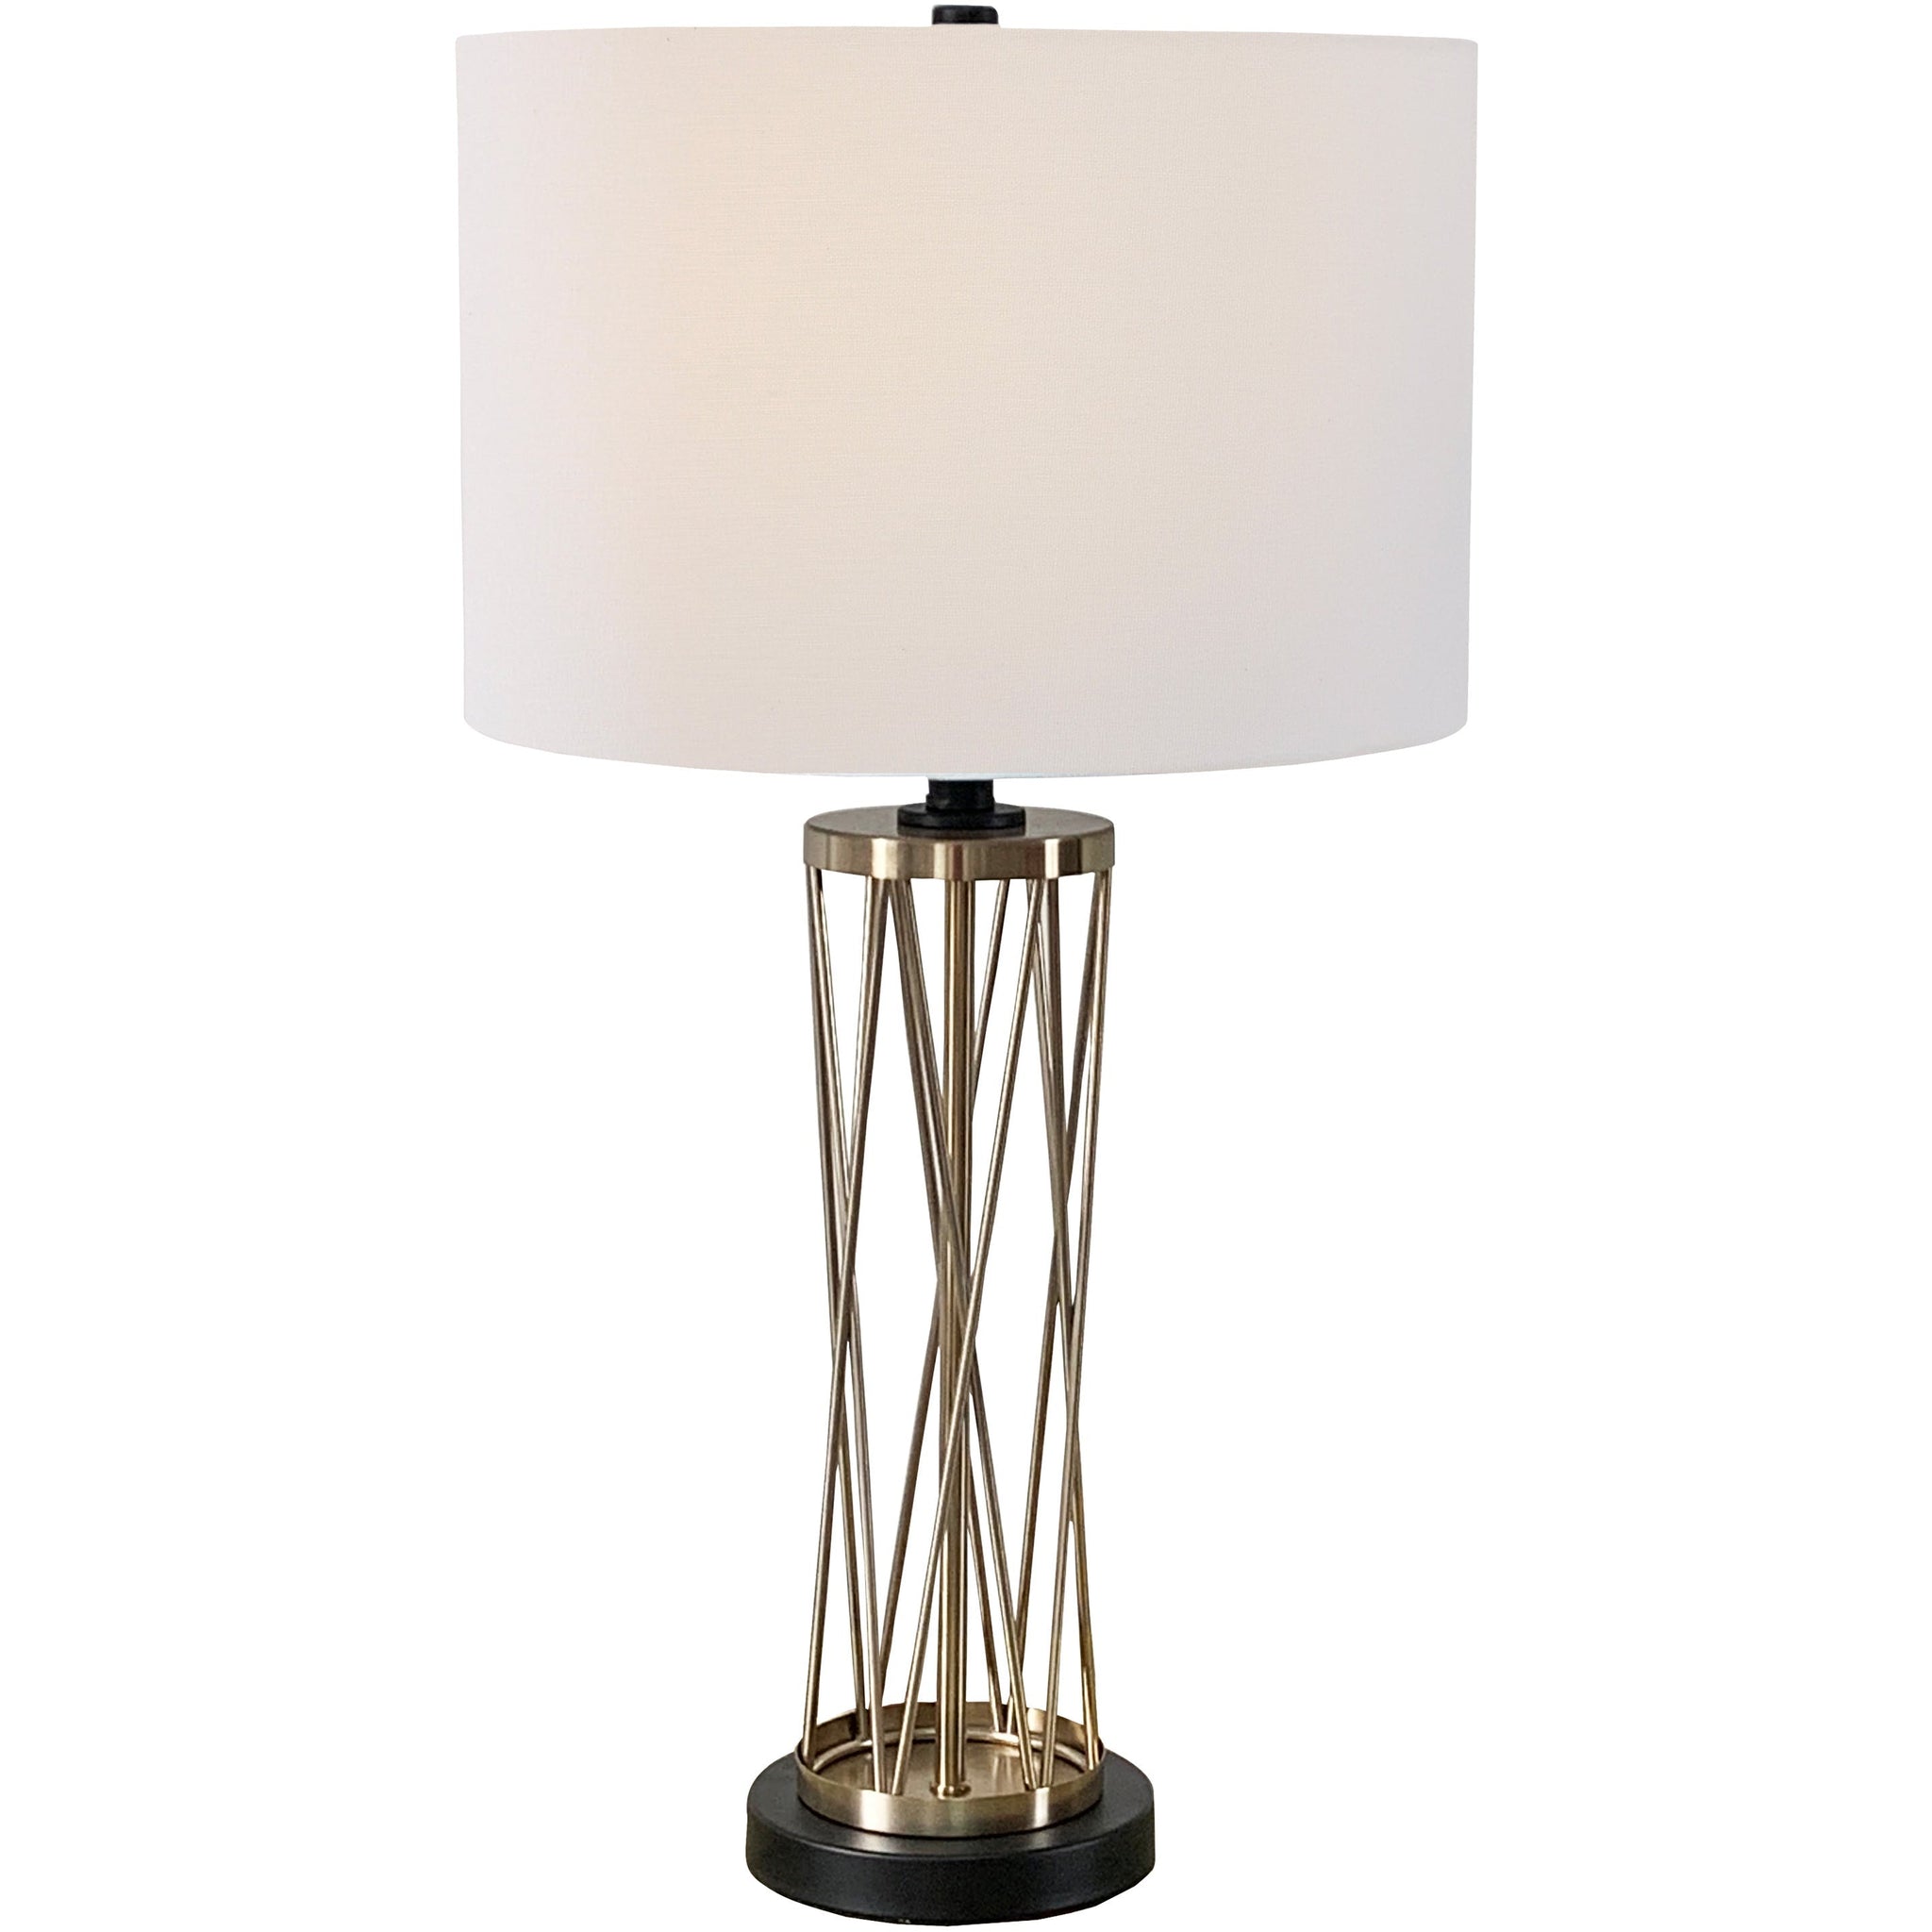 Harper 28" Table Lamp